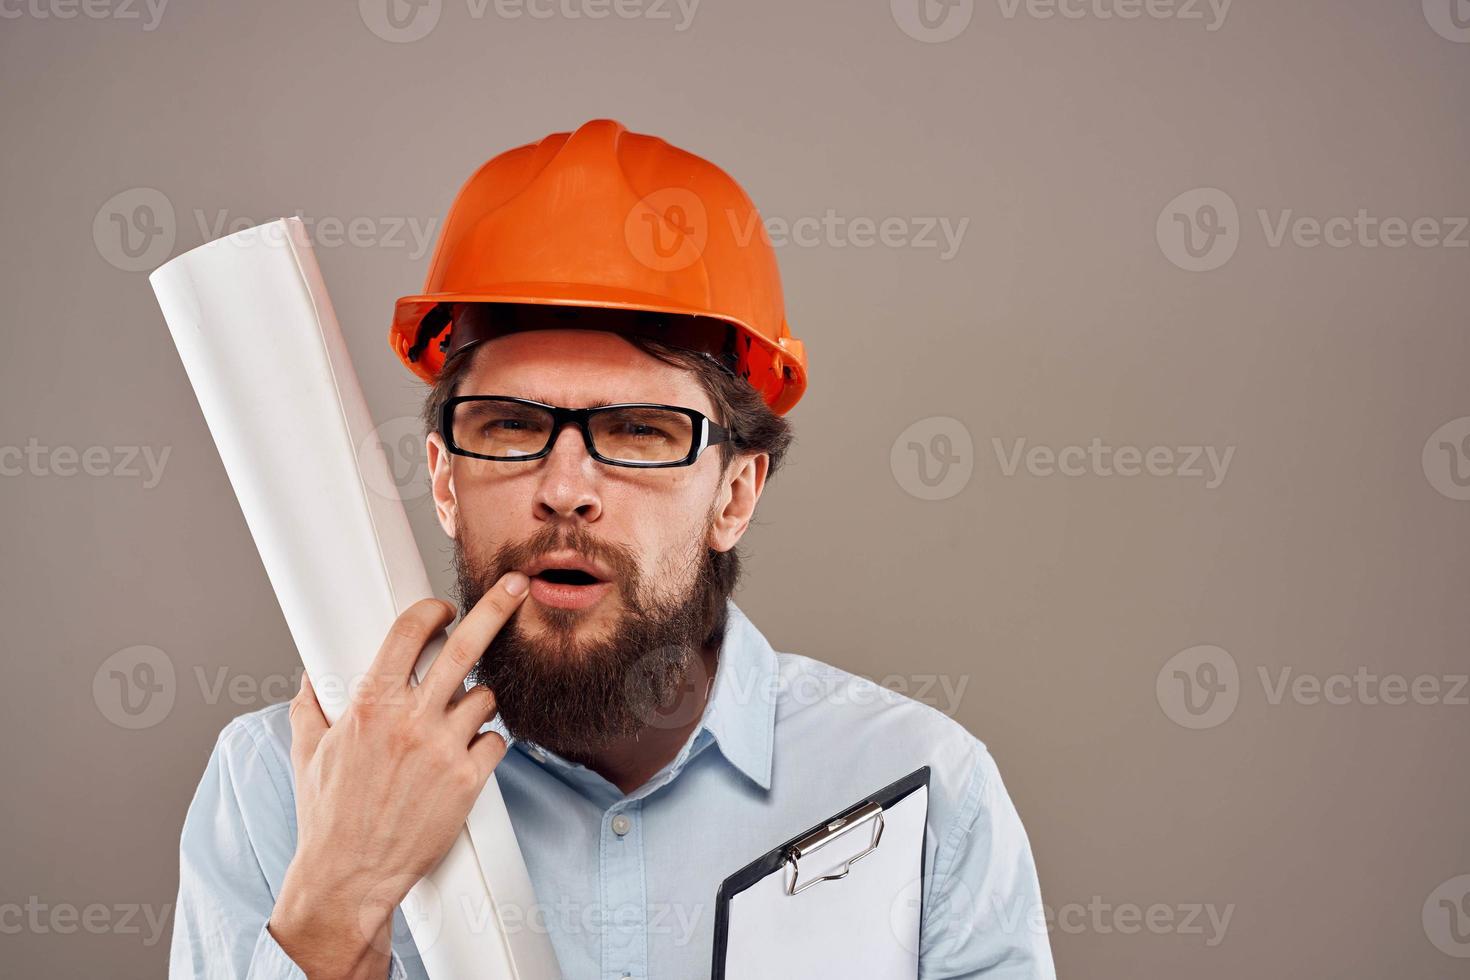 mannetje ingenieur met bril in oranje verf. professioneel blauwdrukken in handen foto